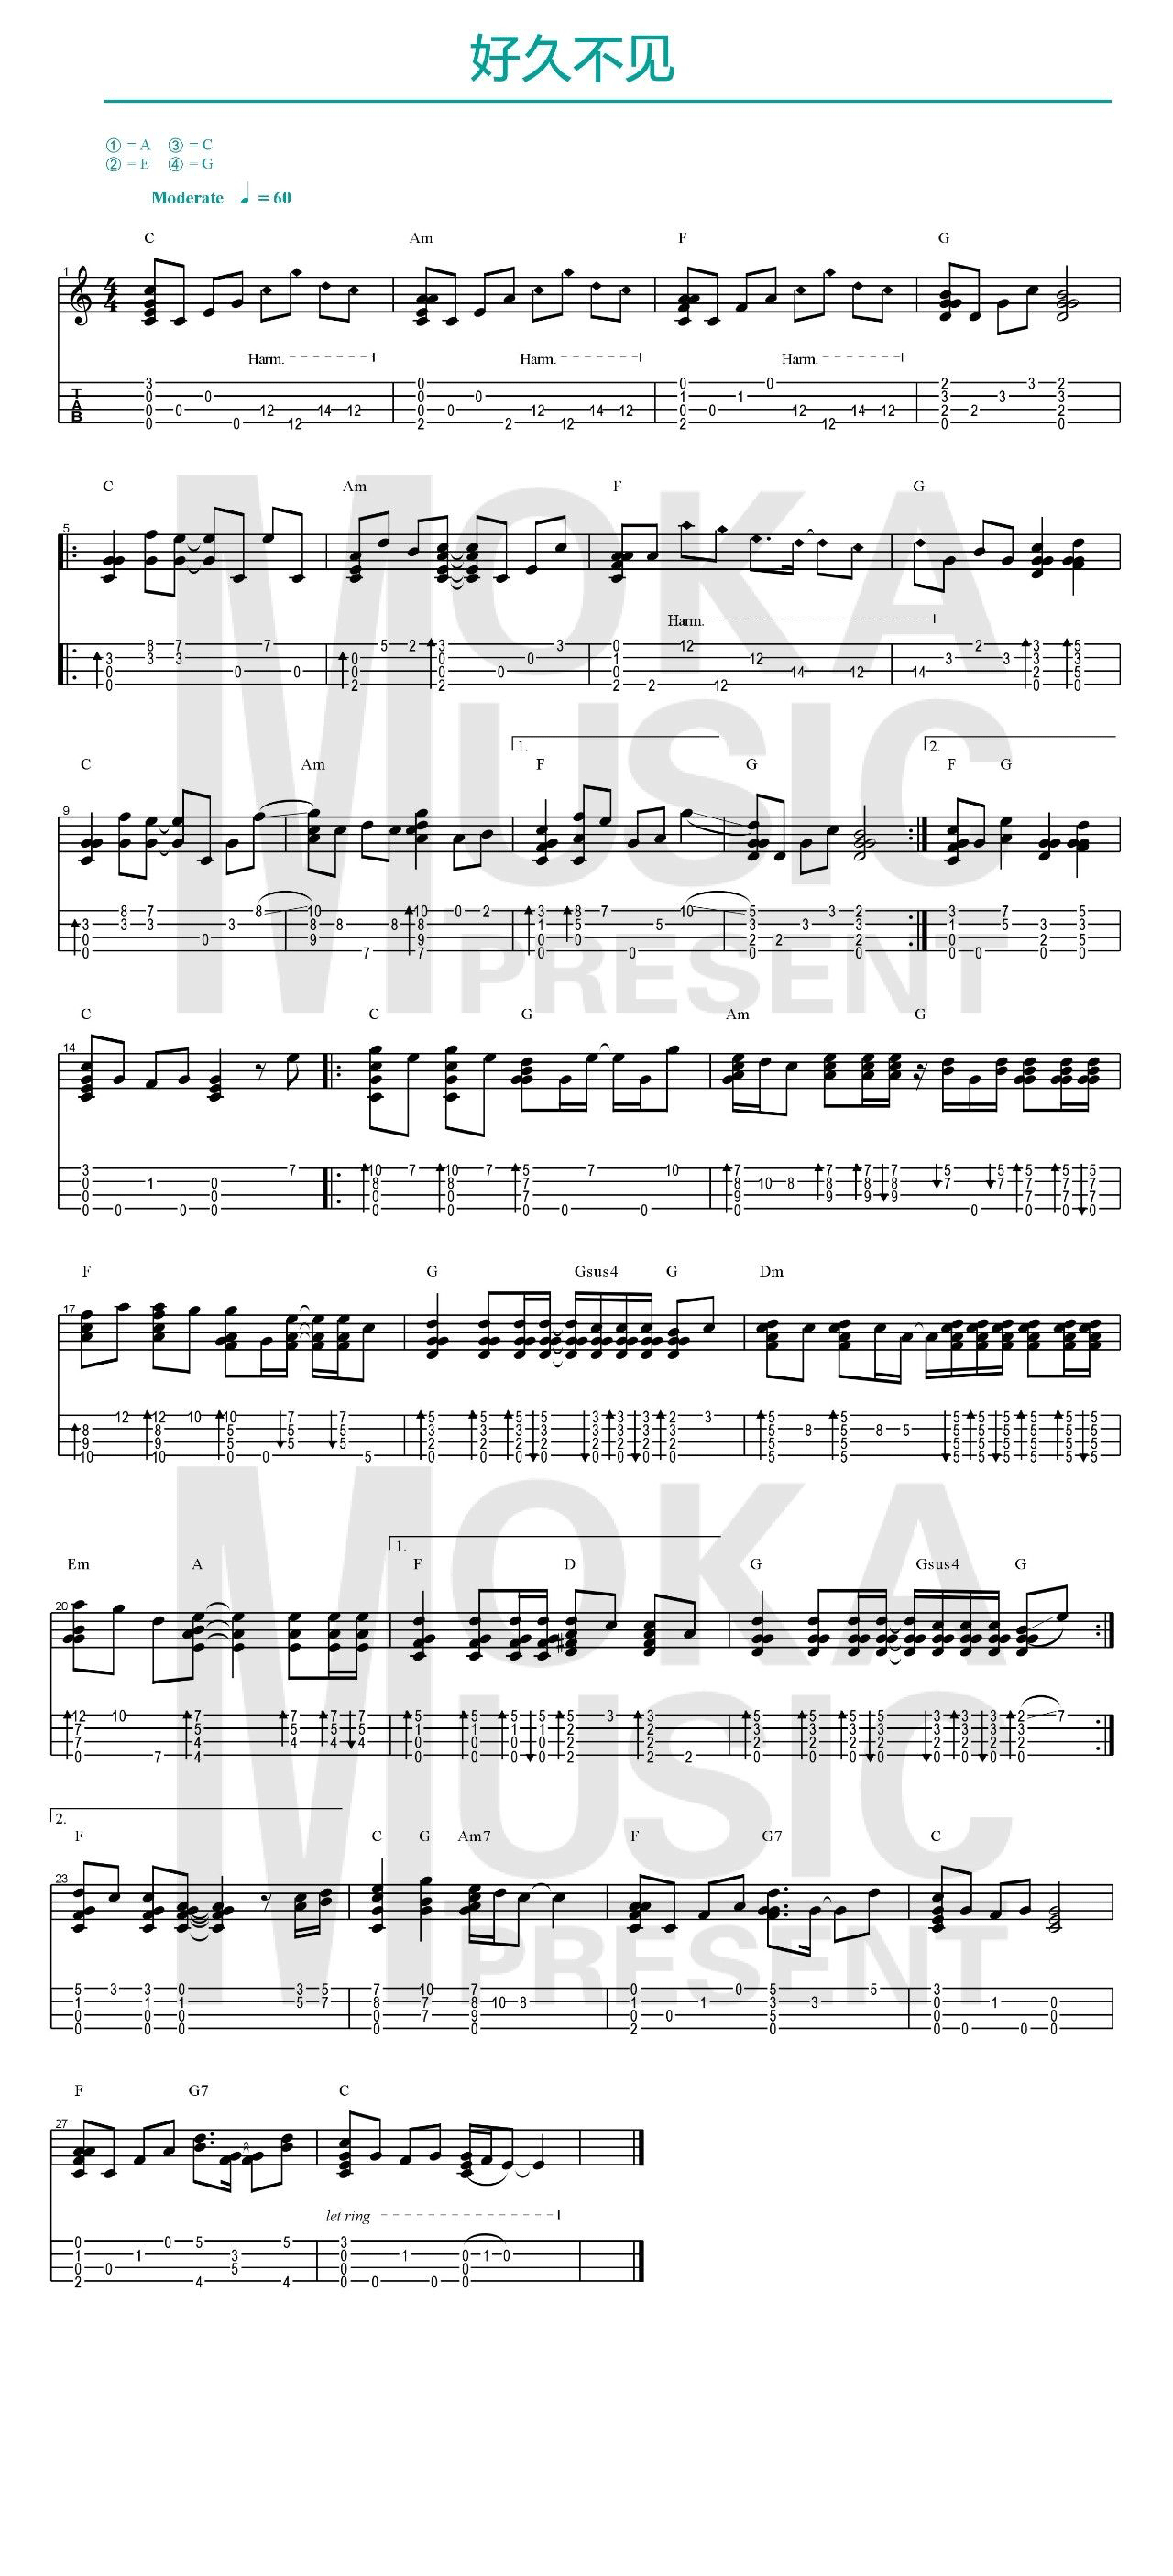 《好久不见》- 陈奕迅 ukulele谱子 指弹教程~~有很炫的泛音哦-C大调音乐网